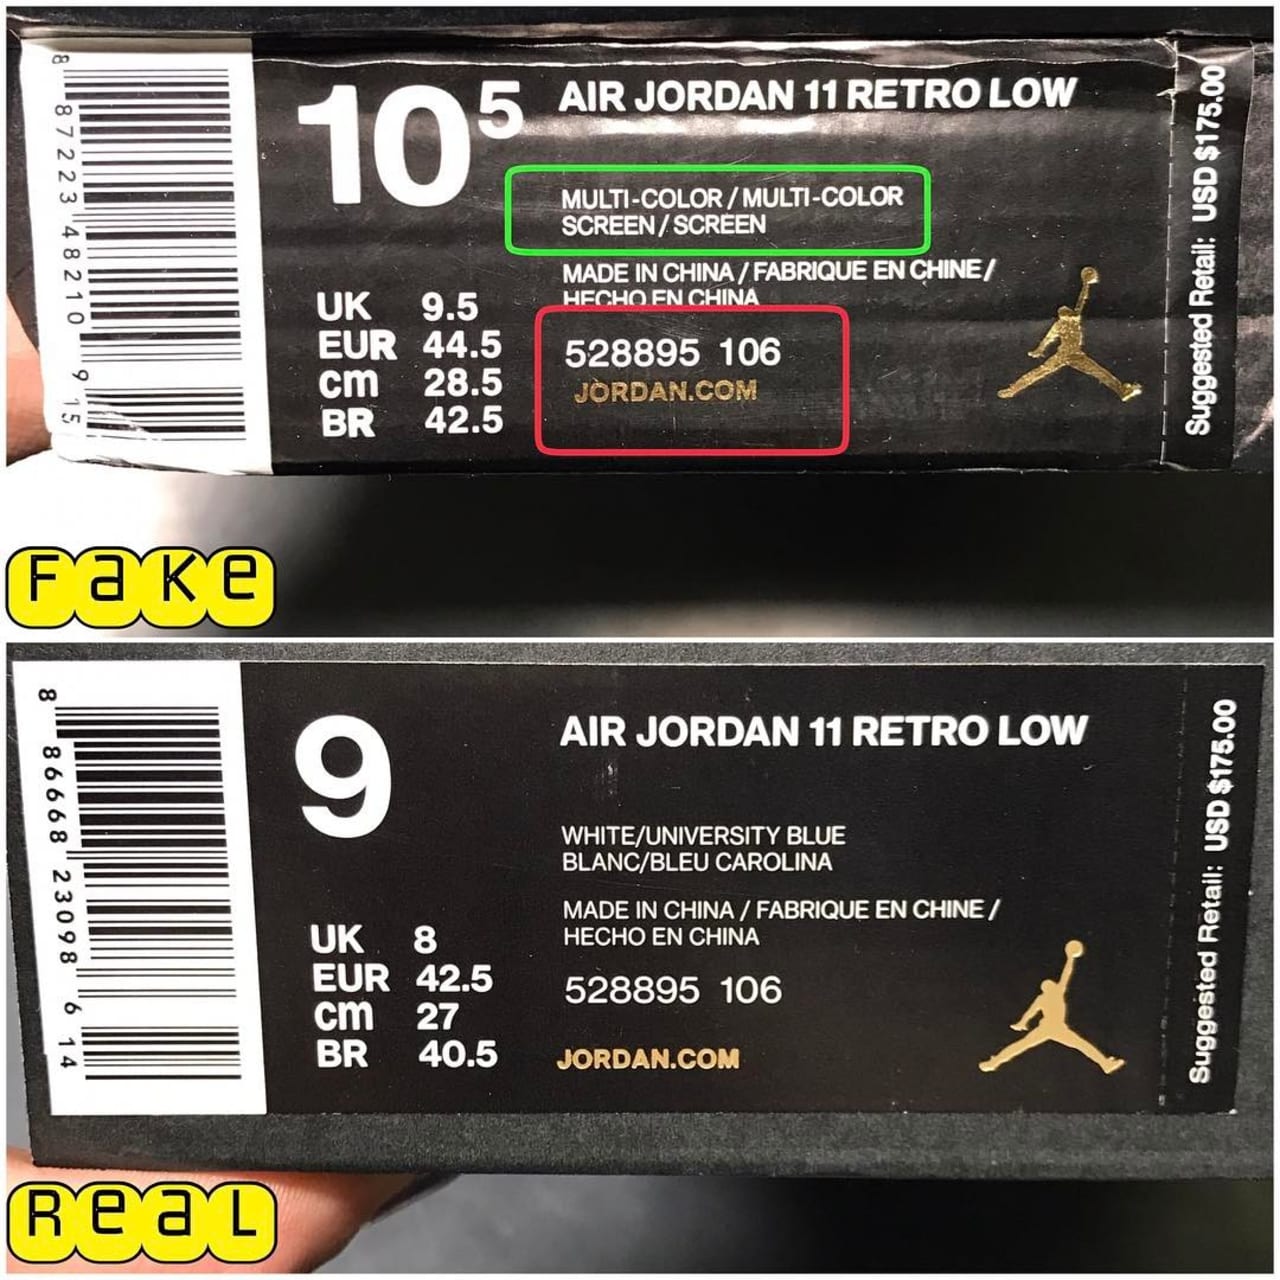 air jordan 1 box real vs fake